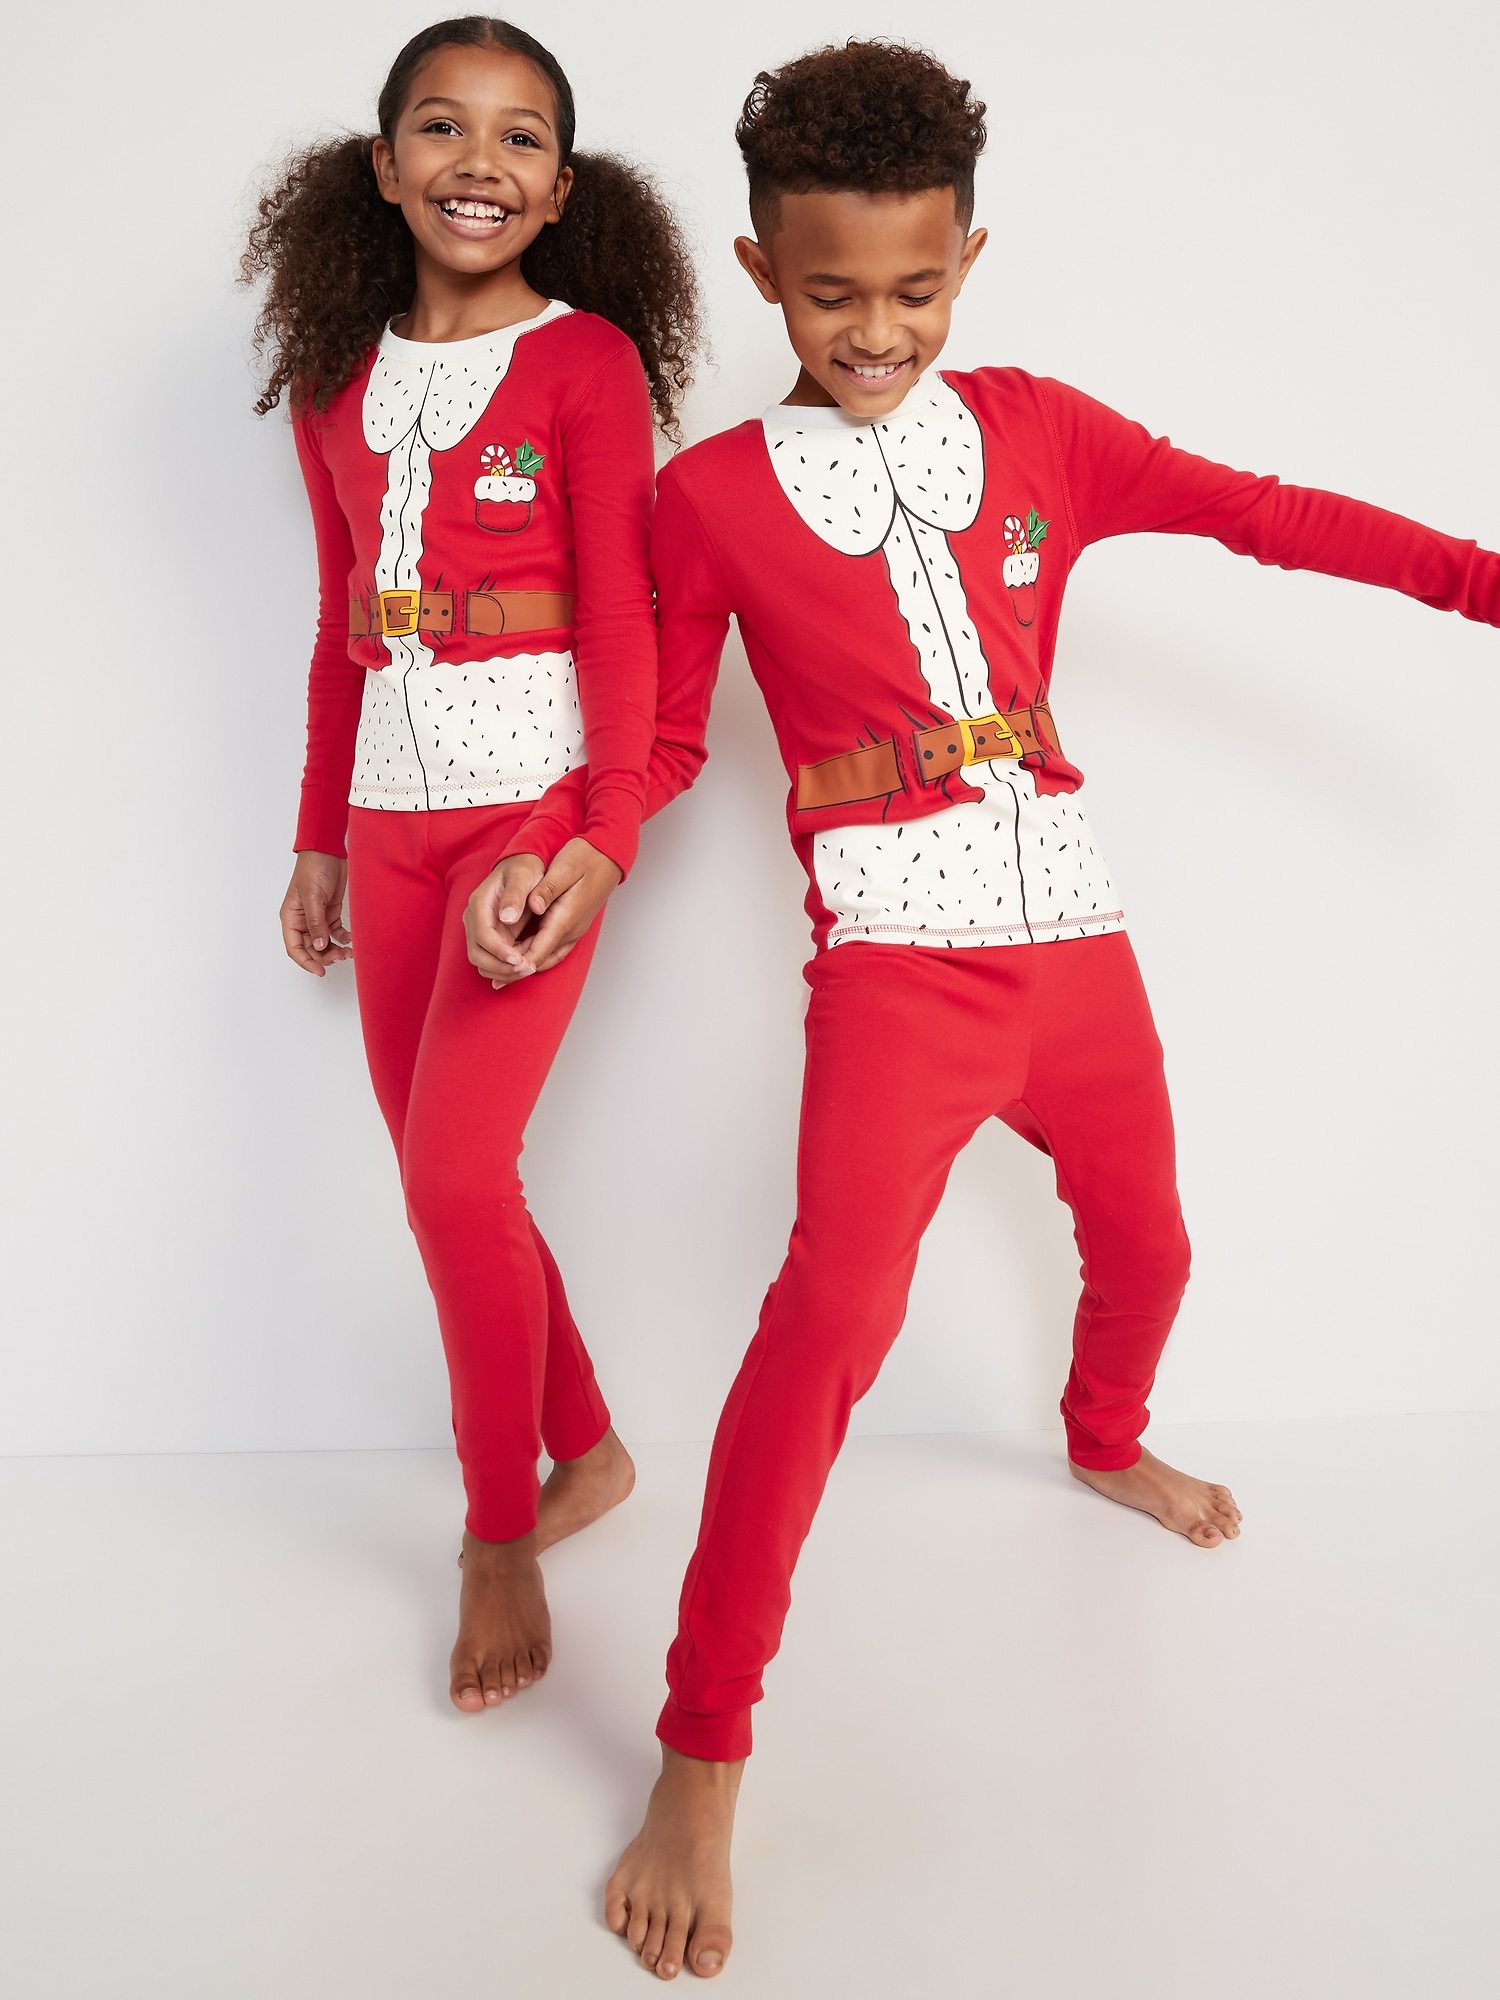 Oldnavy Gender-Neutral Matching Snug-Fit Holiday Pajama Set for Kids